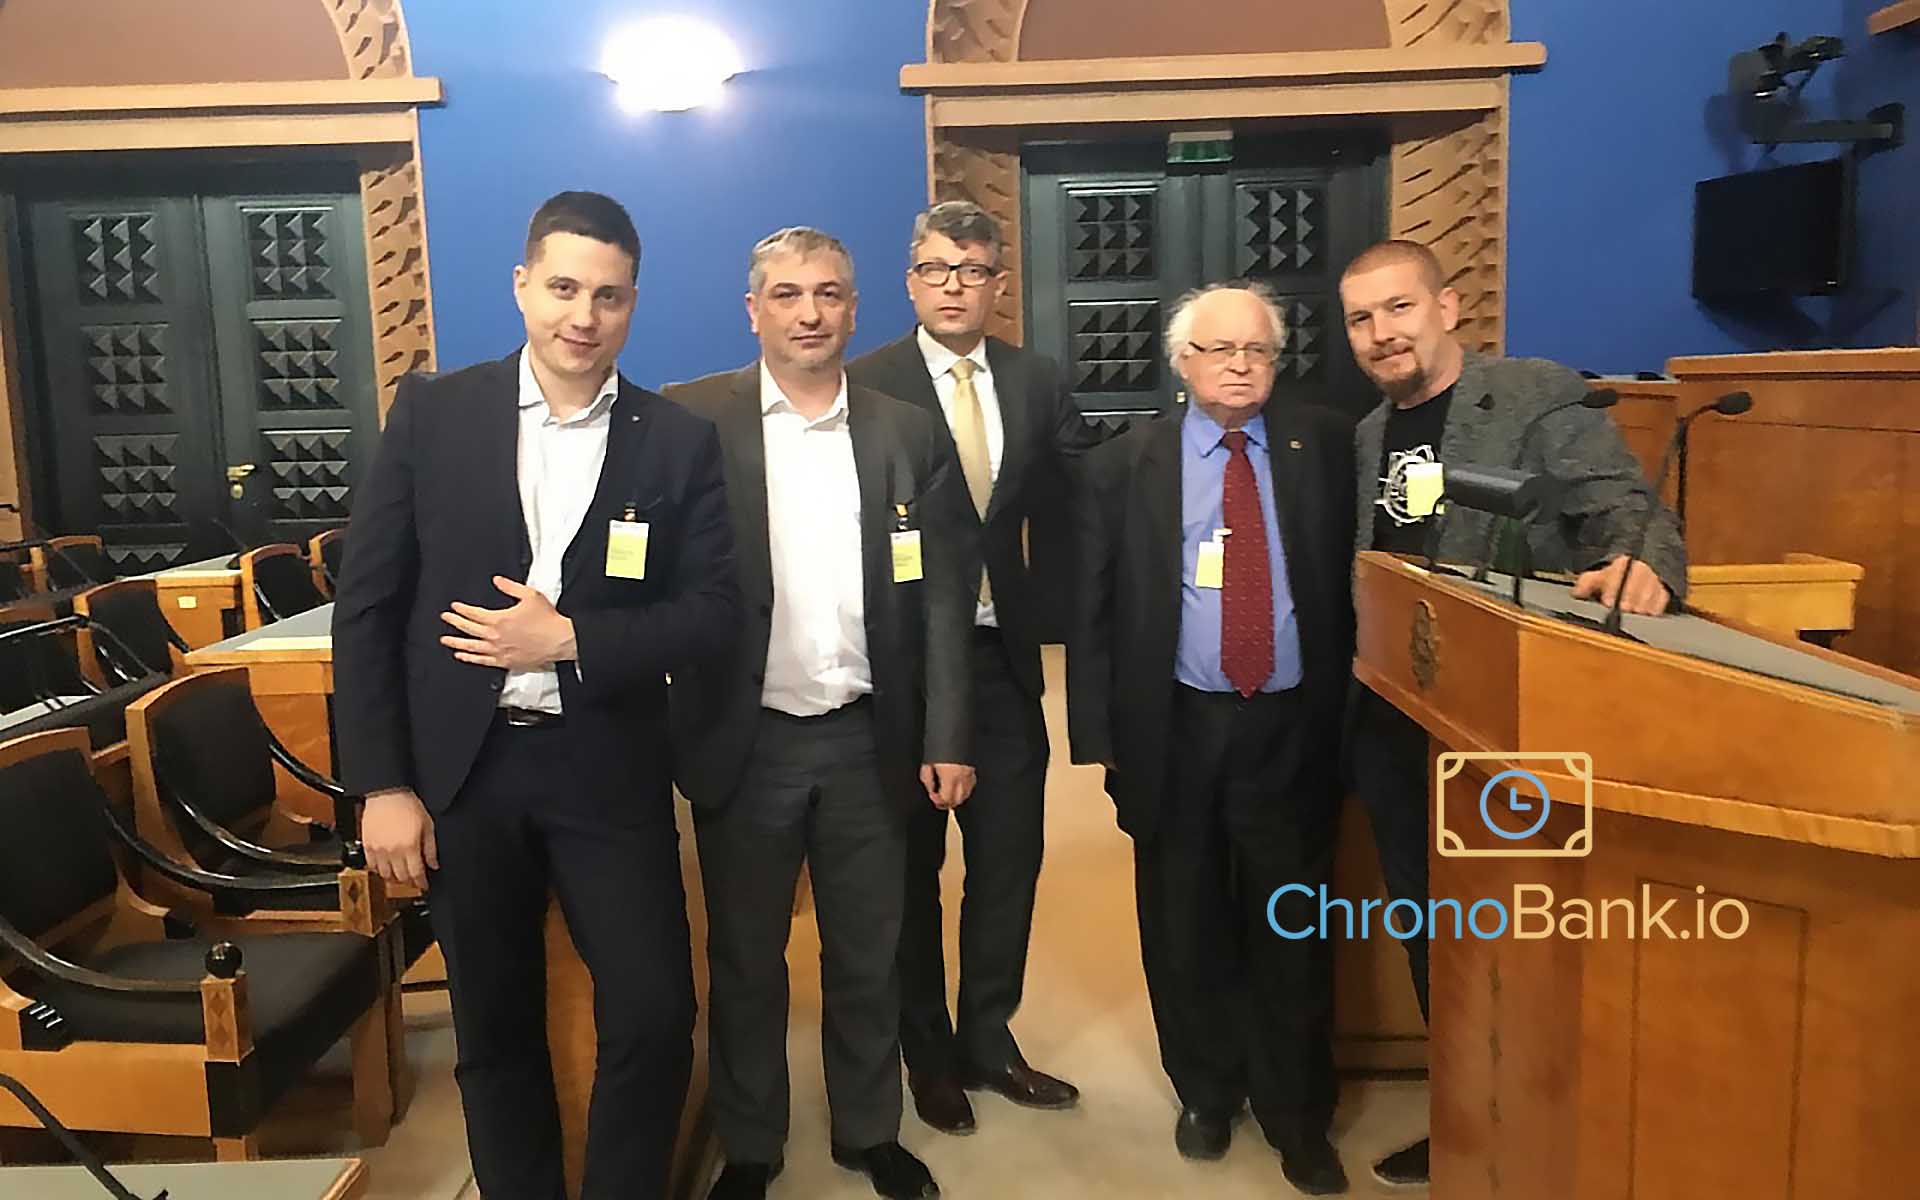 Chronobank Makes Time For Estonia’s Crypto Effort